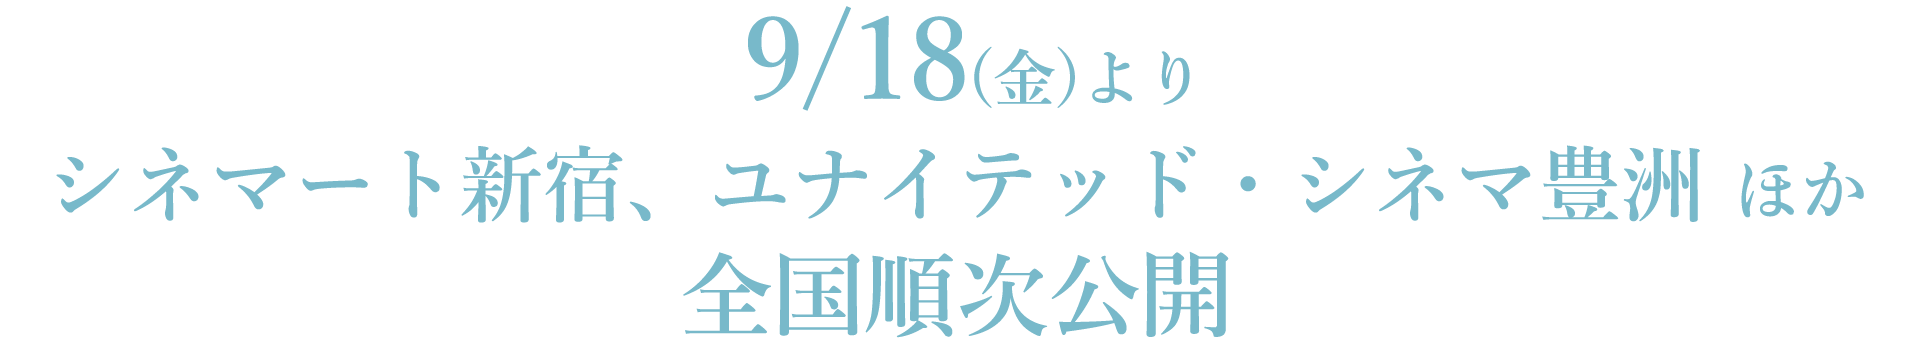 9/18(金)よりシネマート新宿、ユナイテッド・シネマ豊洲 ほか全国順次公開